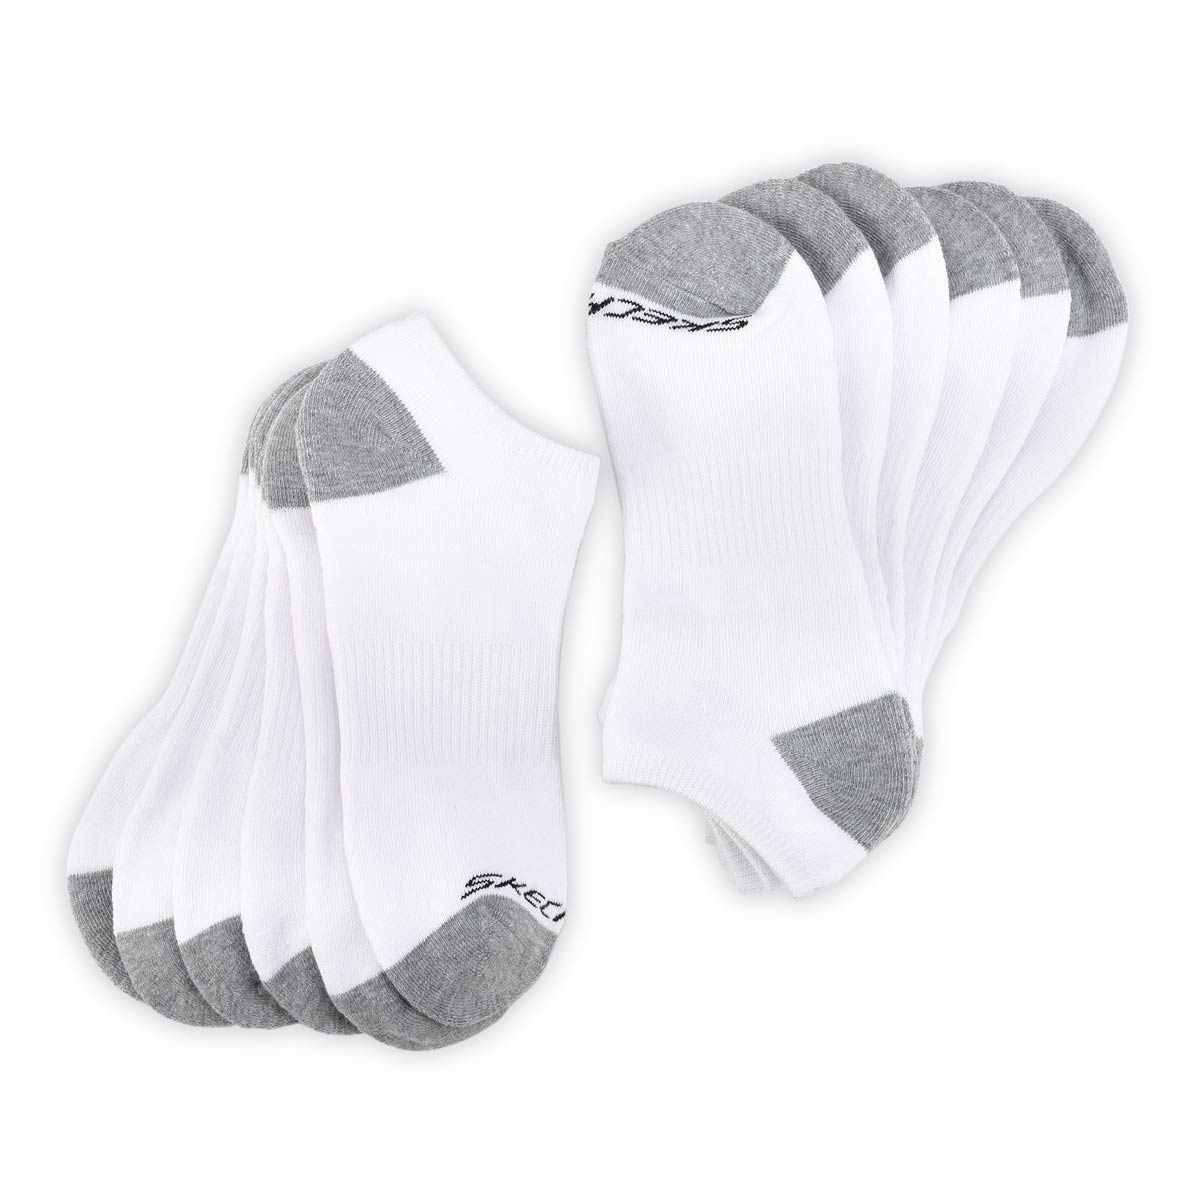 Men's FULL TERRY NO SHOW white multi socks- 6 pack